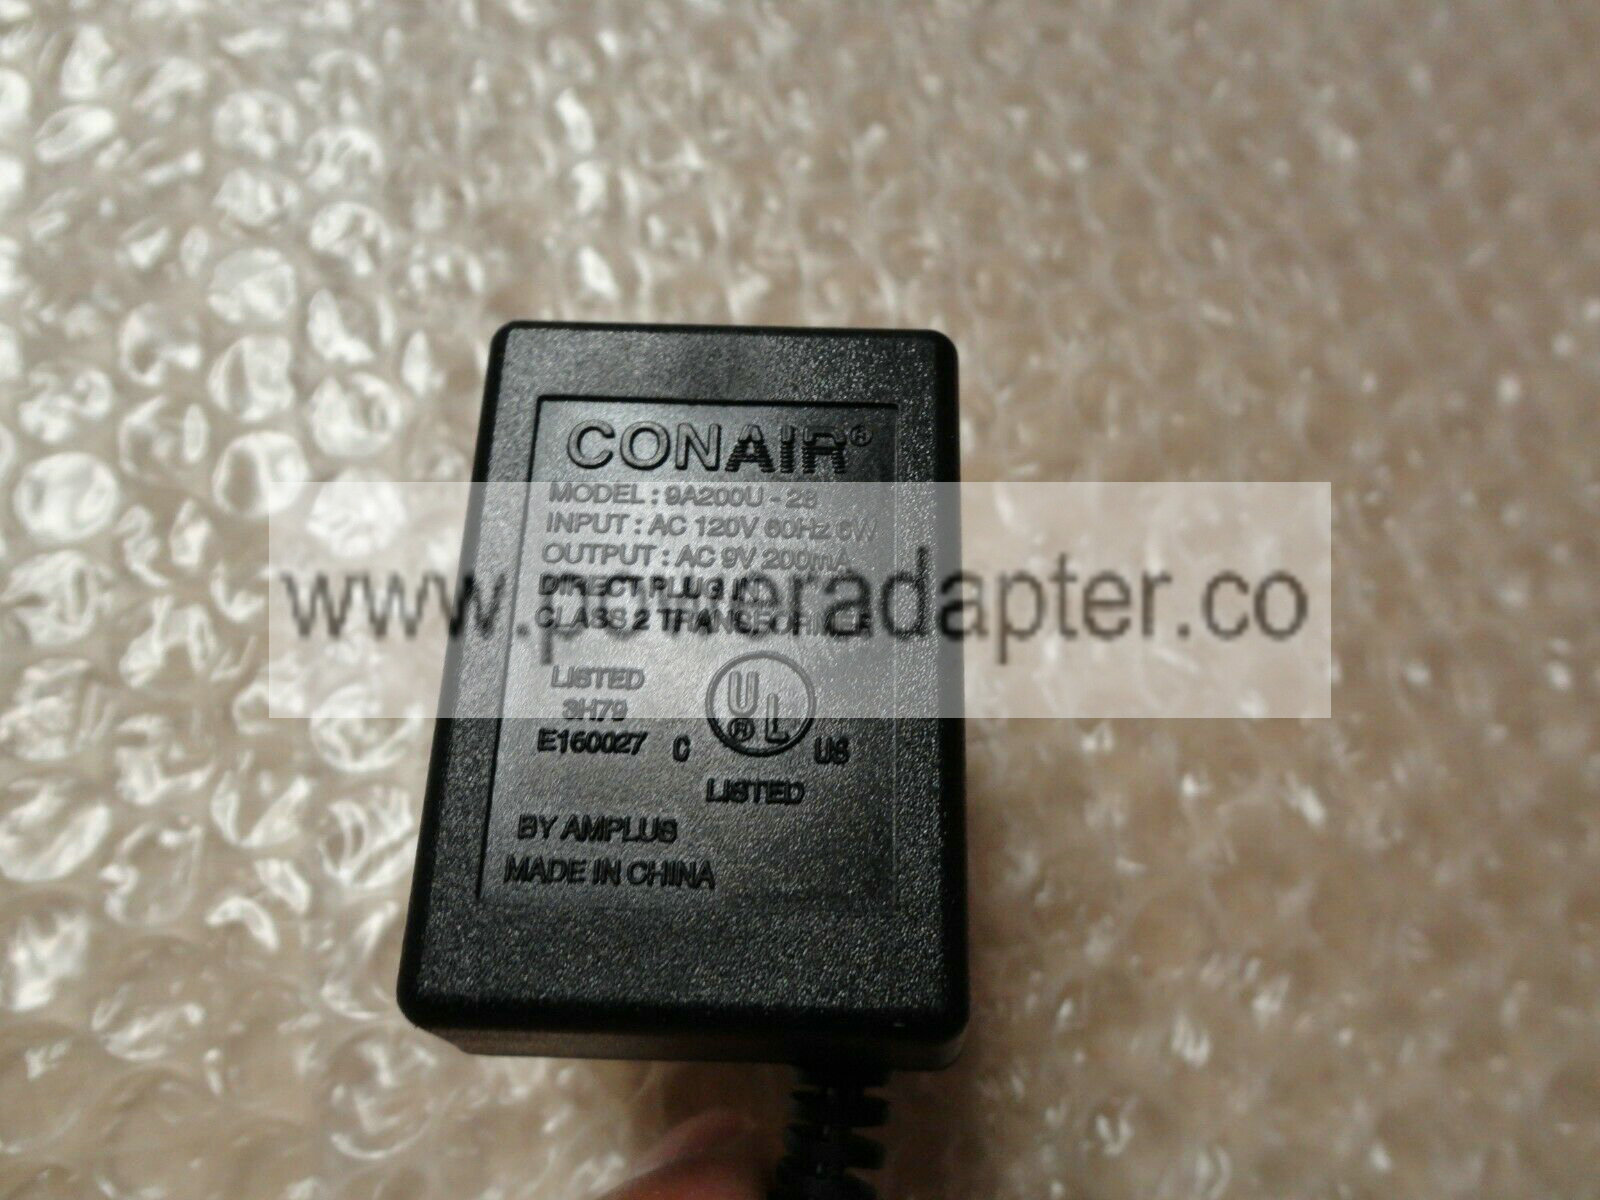 Original OEM CONAIR Adapter Model : 9A200U-28 6VDC 200mA brand: CONAIR model: 9A200U-28 input:Ac 120v 60hz 6w outp - Click Image to Close